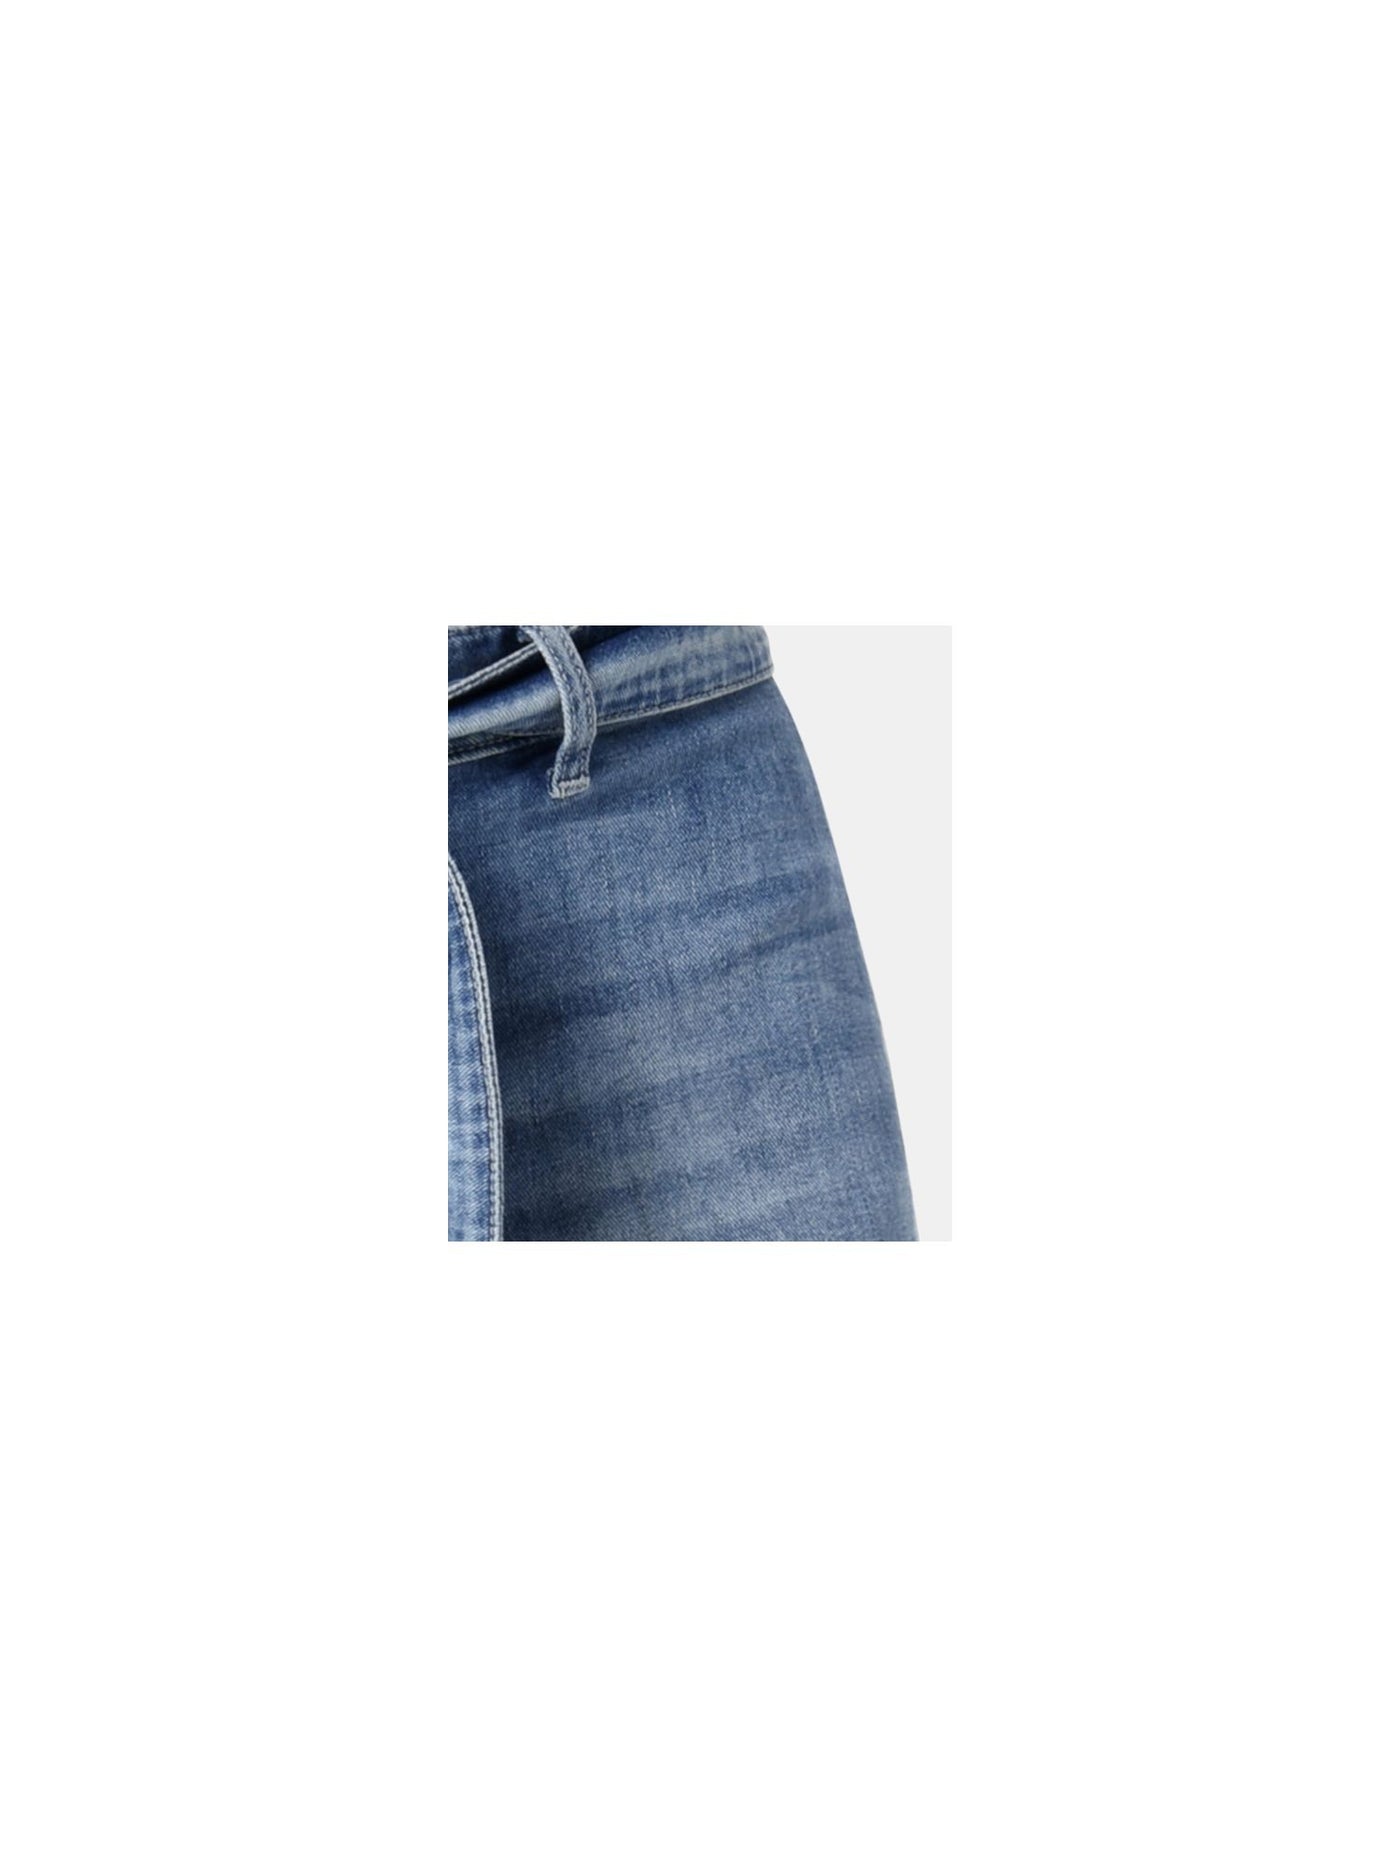 JOE'S Womens Blue Belted Zippered Straight leg Jeans 27 Waist